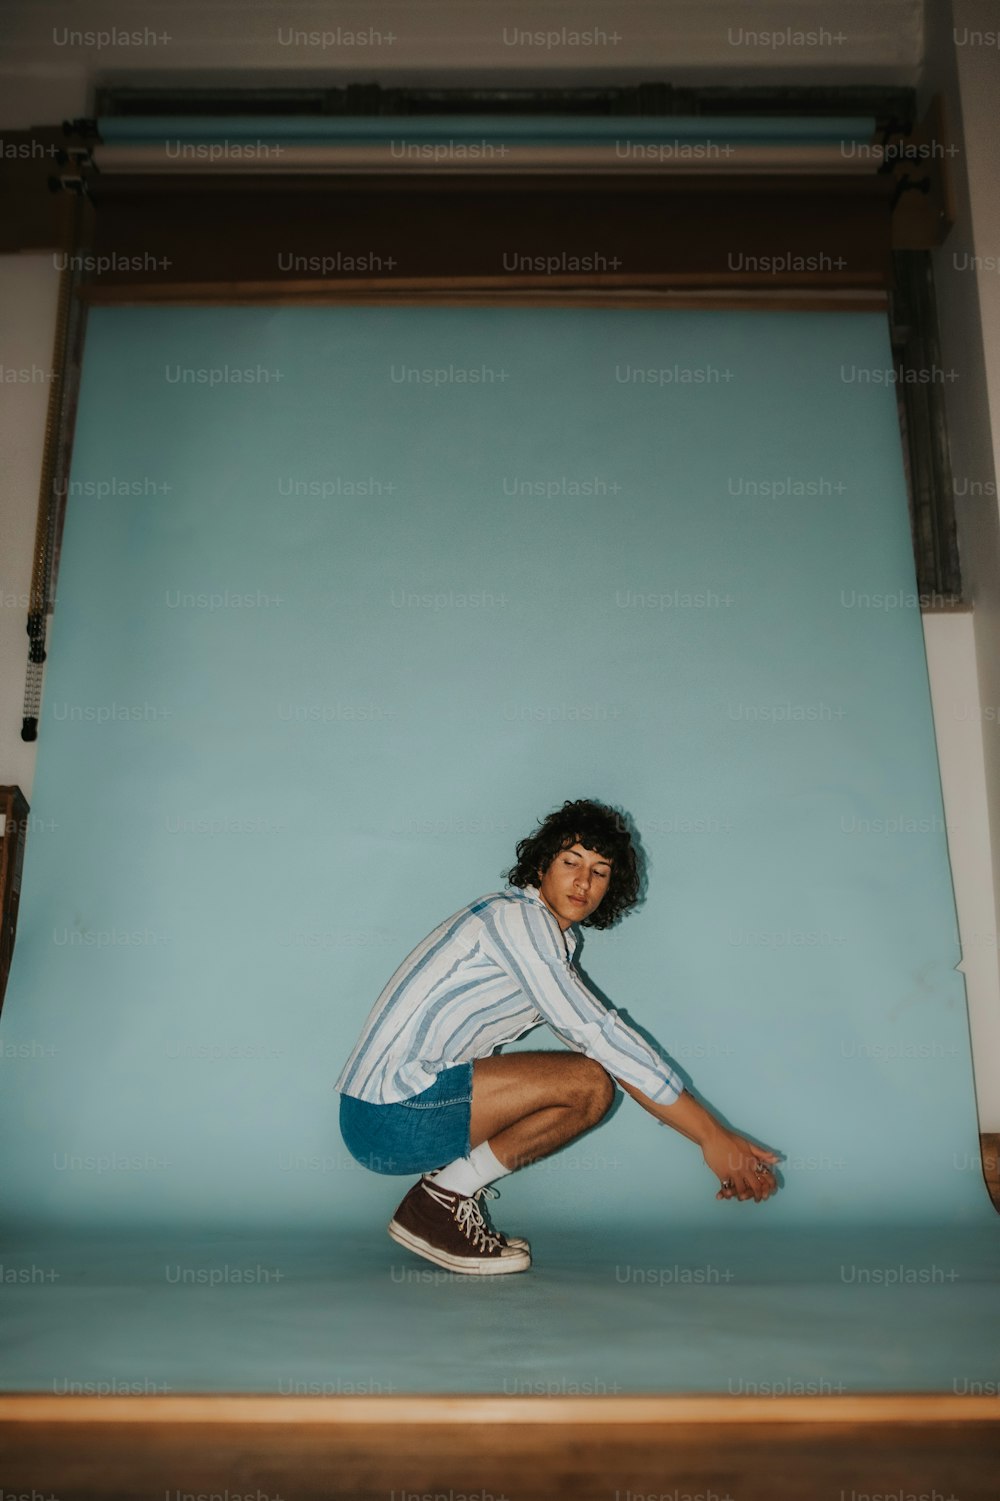 Un hombre en cuclillas en un escalón frente a una pared azul